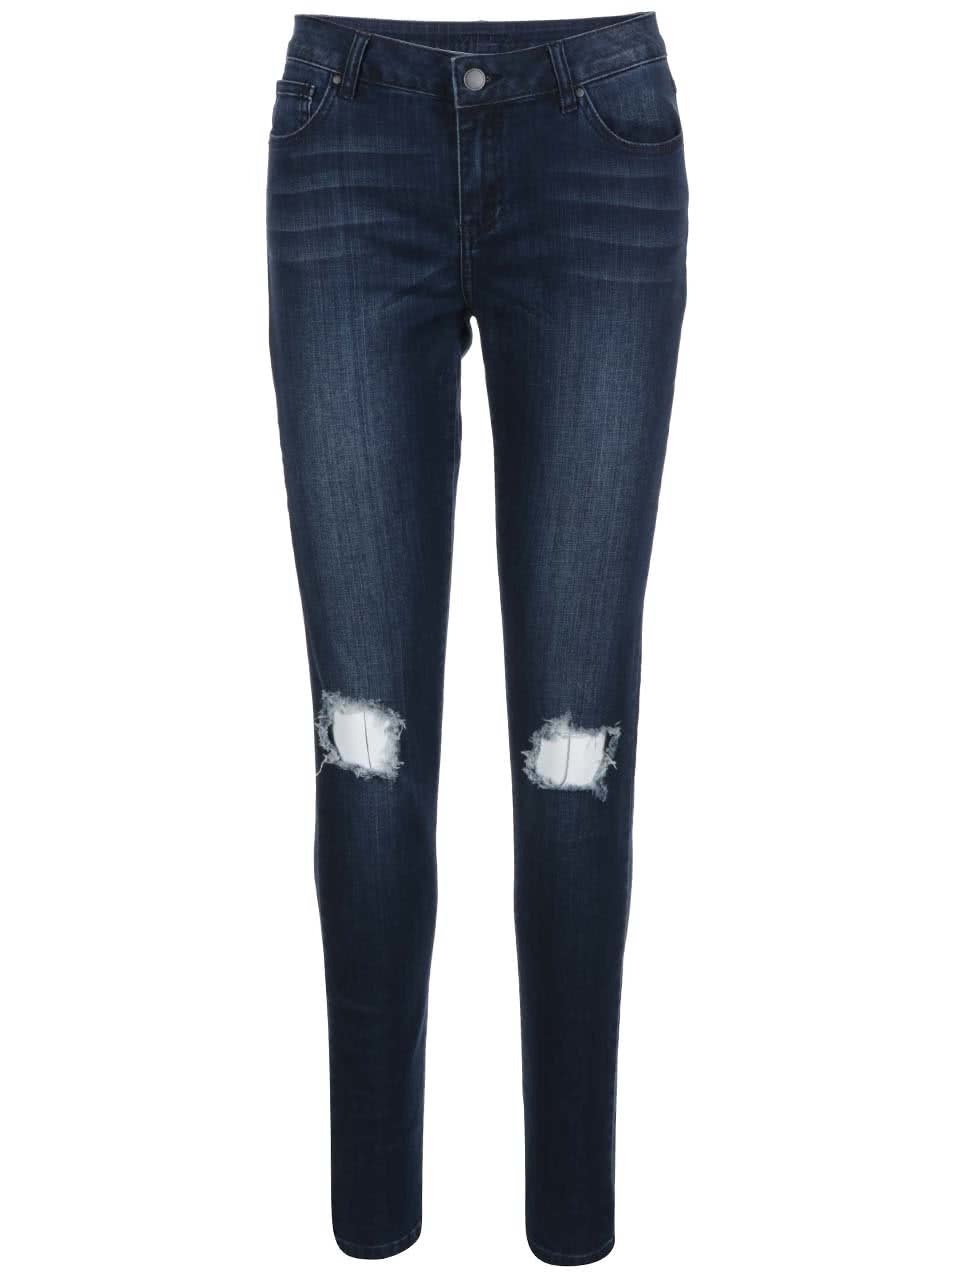 Tmavě modré džíny s potrhaným efektem VILA Crush